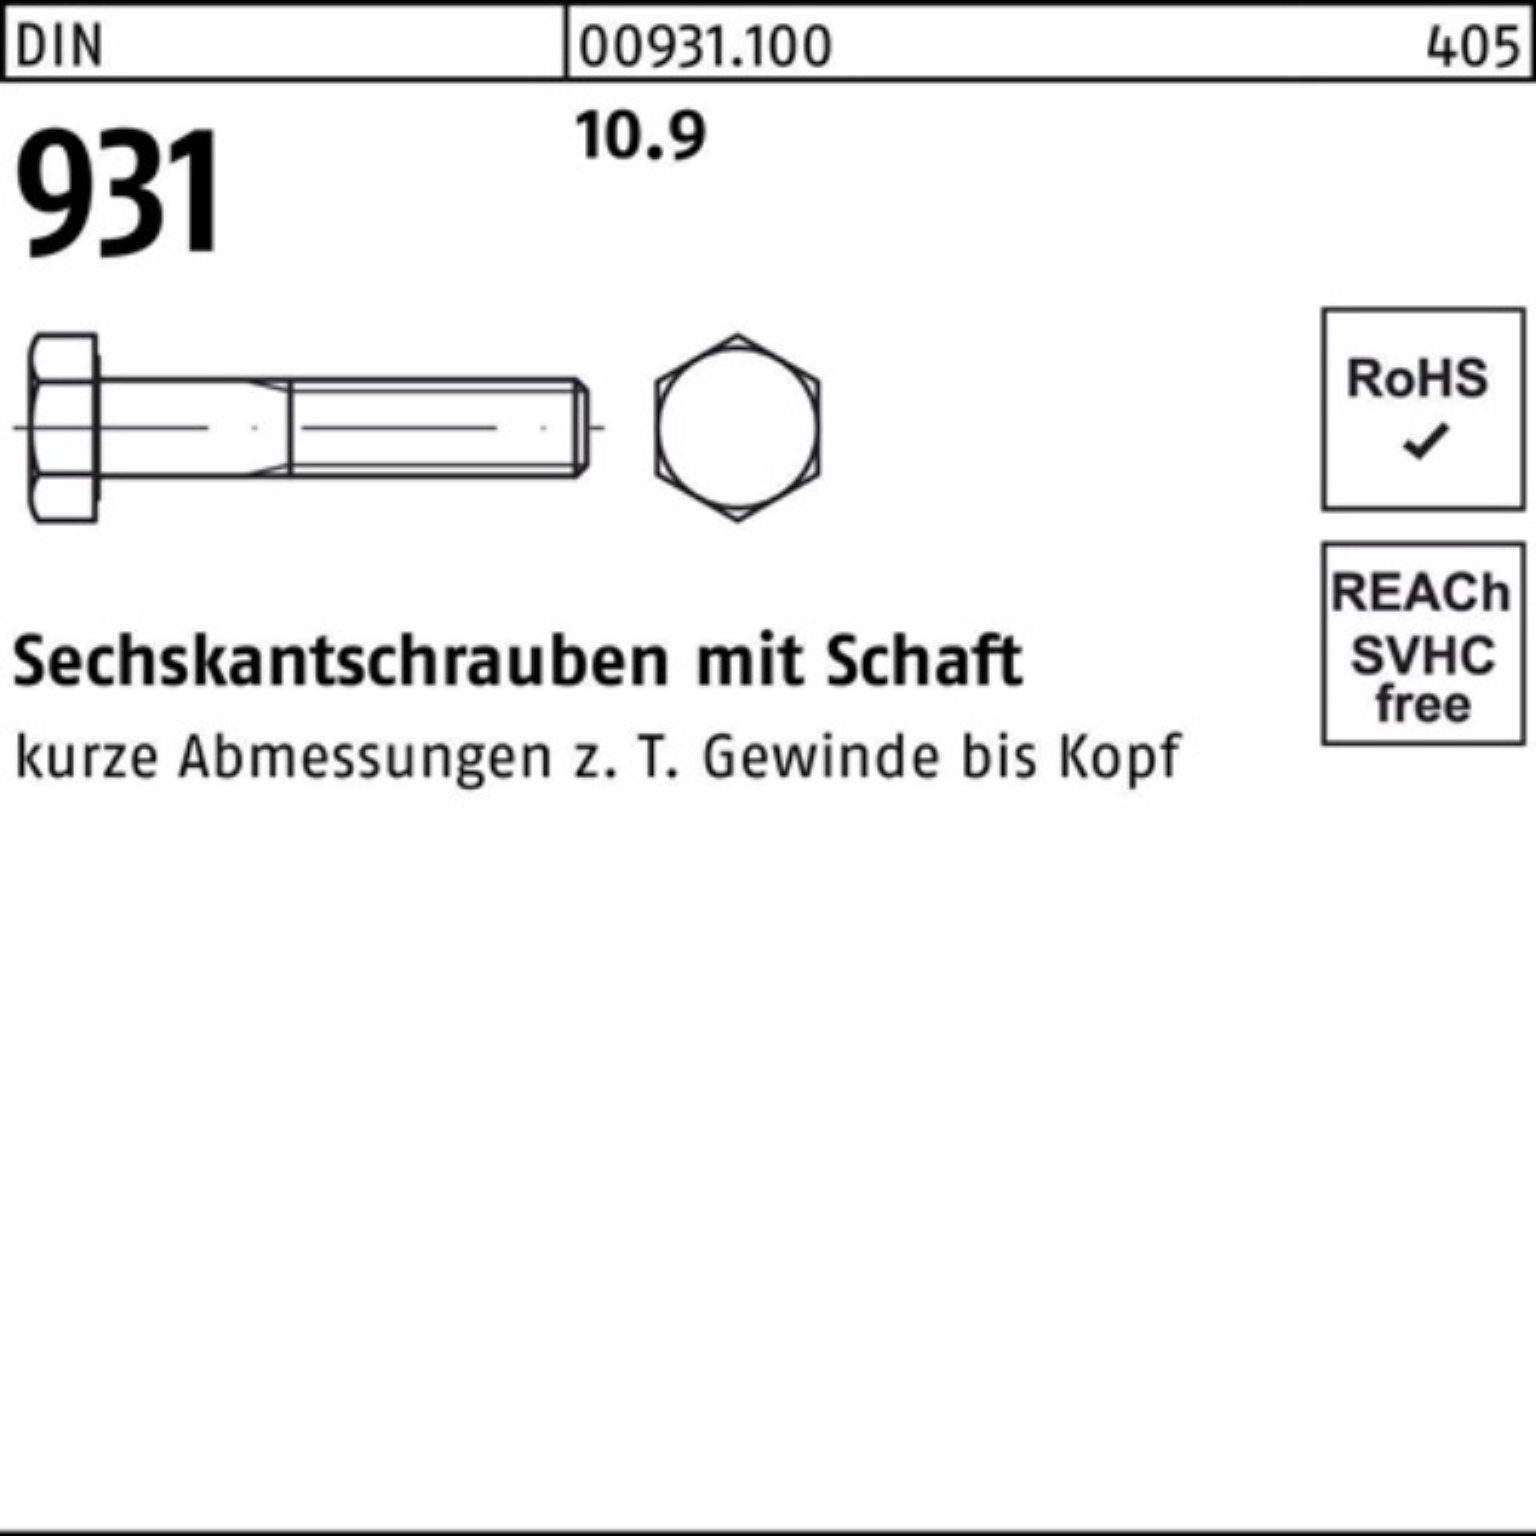 Reyher Sechskantschraube 100er 320 Stück 931 1 DIN Pack Schaft DIN Sechskantschraube M20x 10.9